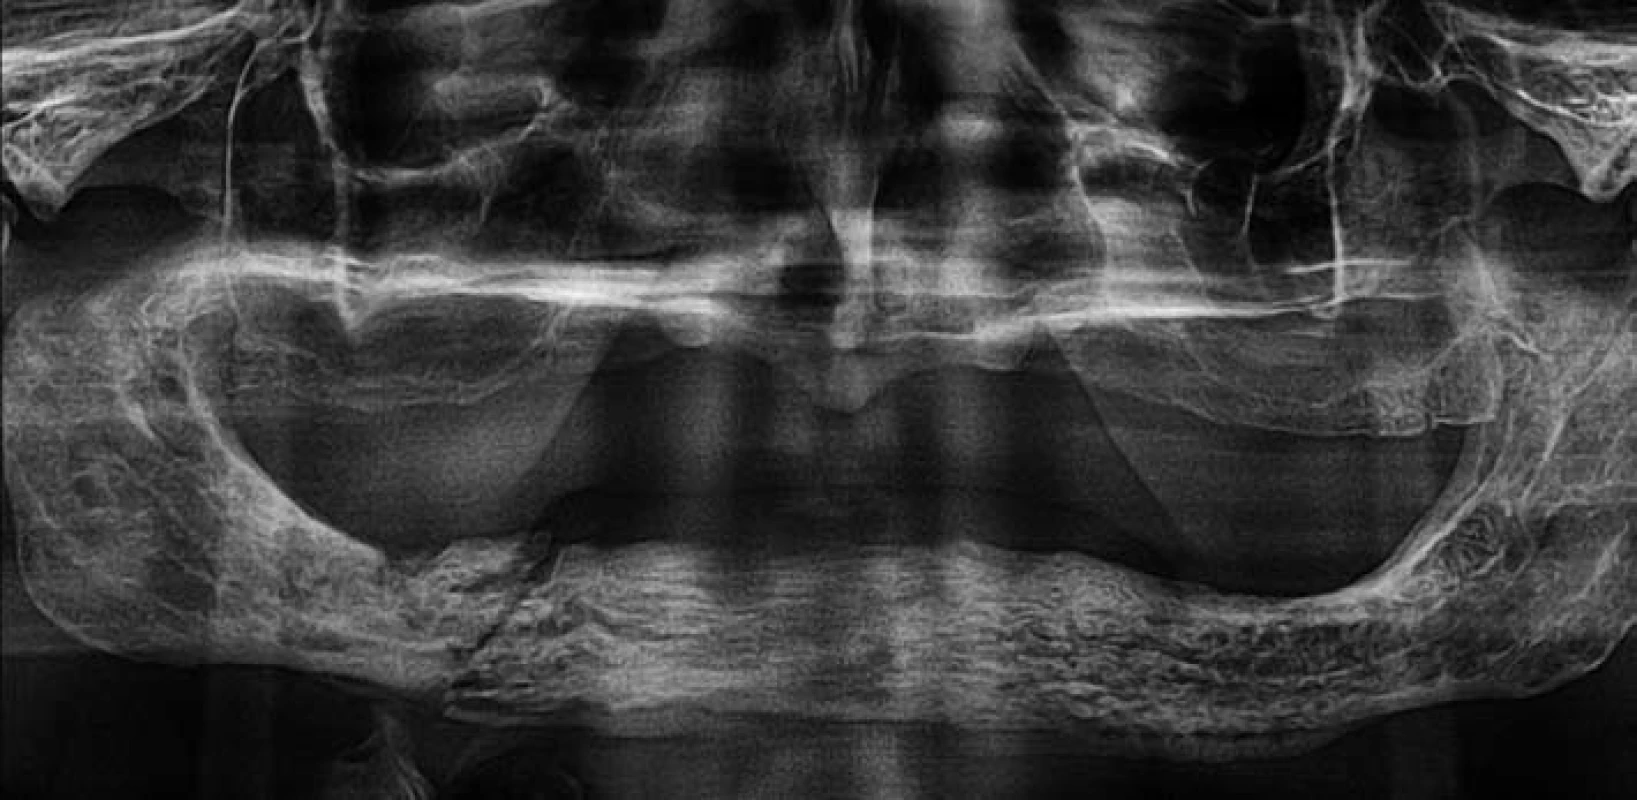 Ortopantomogram pacienta z obr. 1 – nehomogenní struktura kosti dolní čelisti se sklerózou především ve frontálním úseku a v těle vpravo. Dále je jasně patrná patologická zlomenina v těle dolní čelisti vpravo bez výraznější dislokace, při dolní hraně čelisti je viditelná osifikovaná periostální reakce.